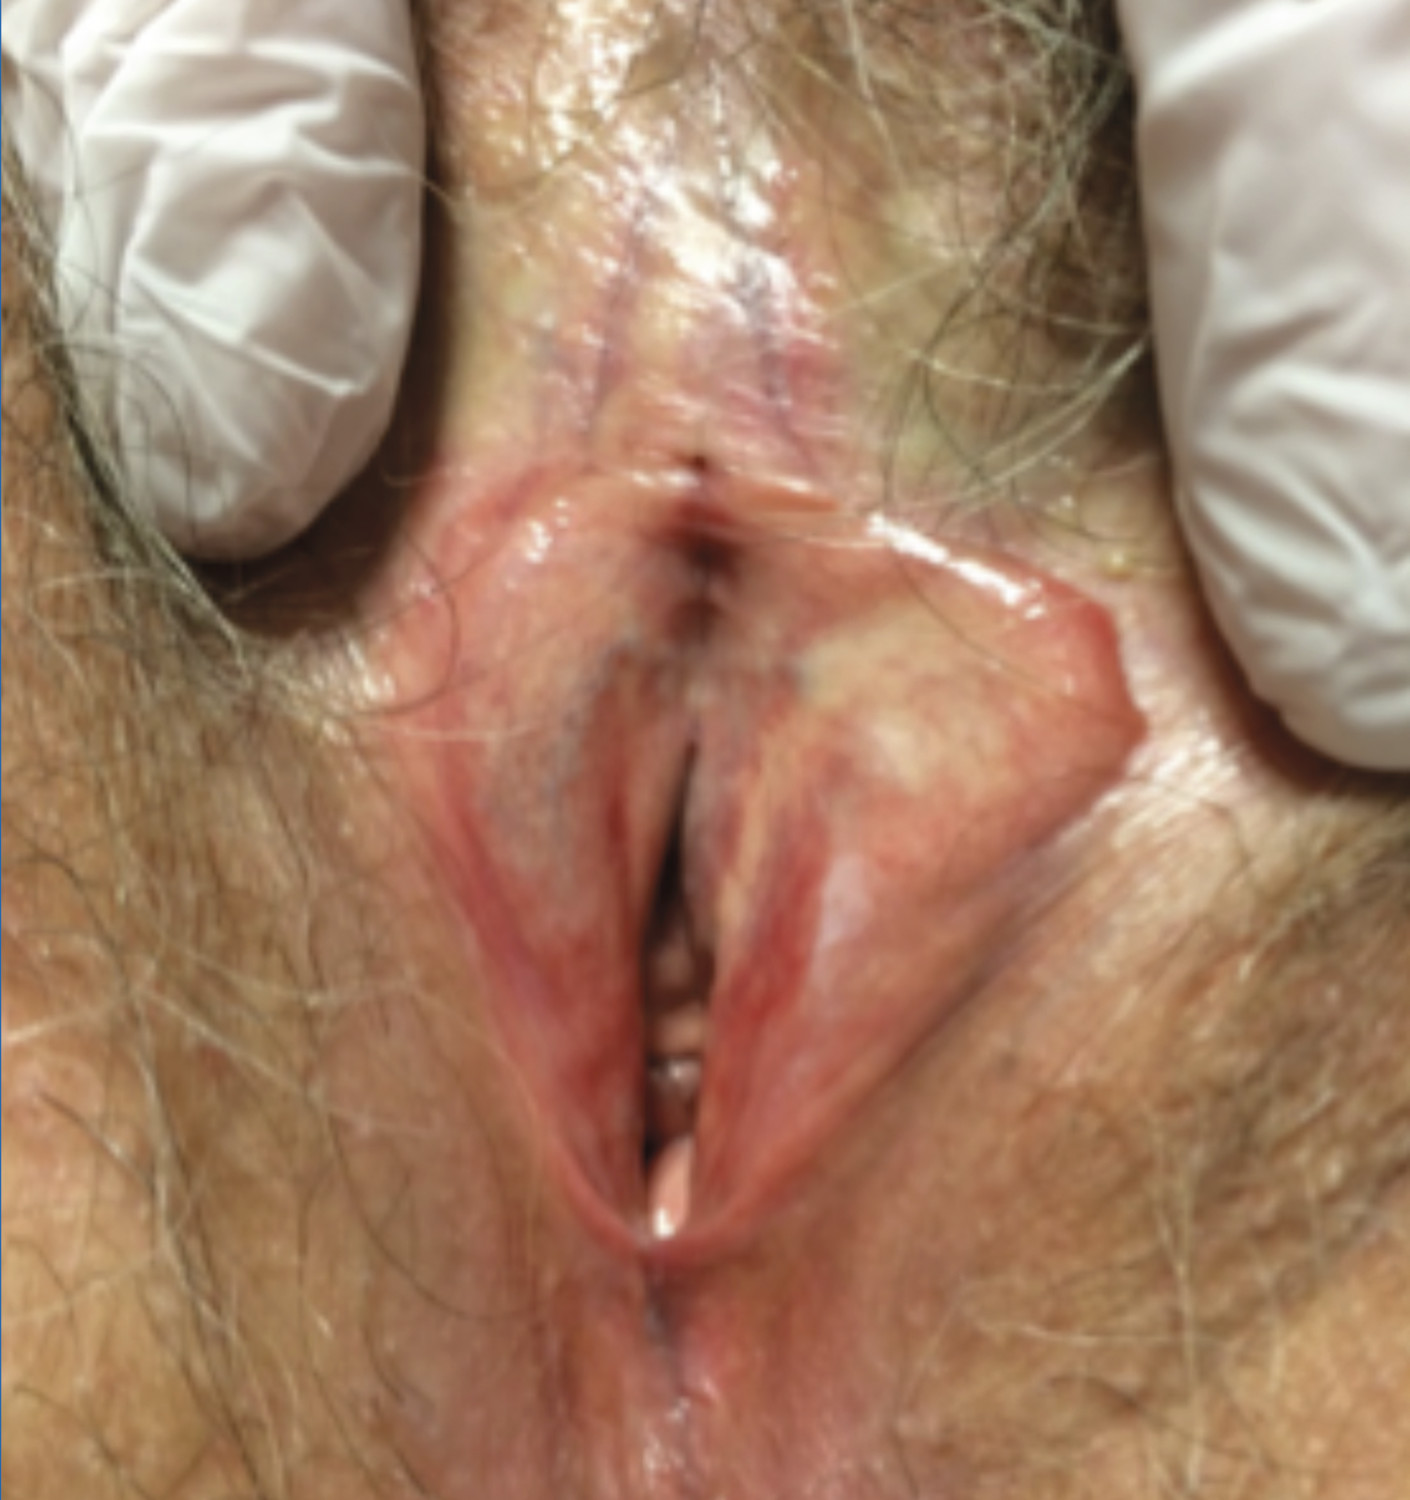 Consultation gynéco-dermatologique de pathologie vulvaire - Figure 4